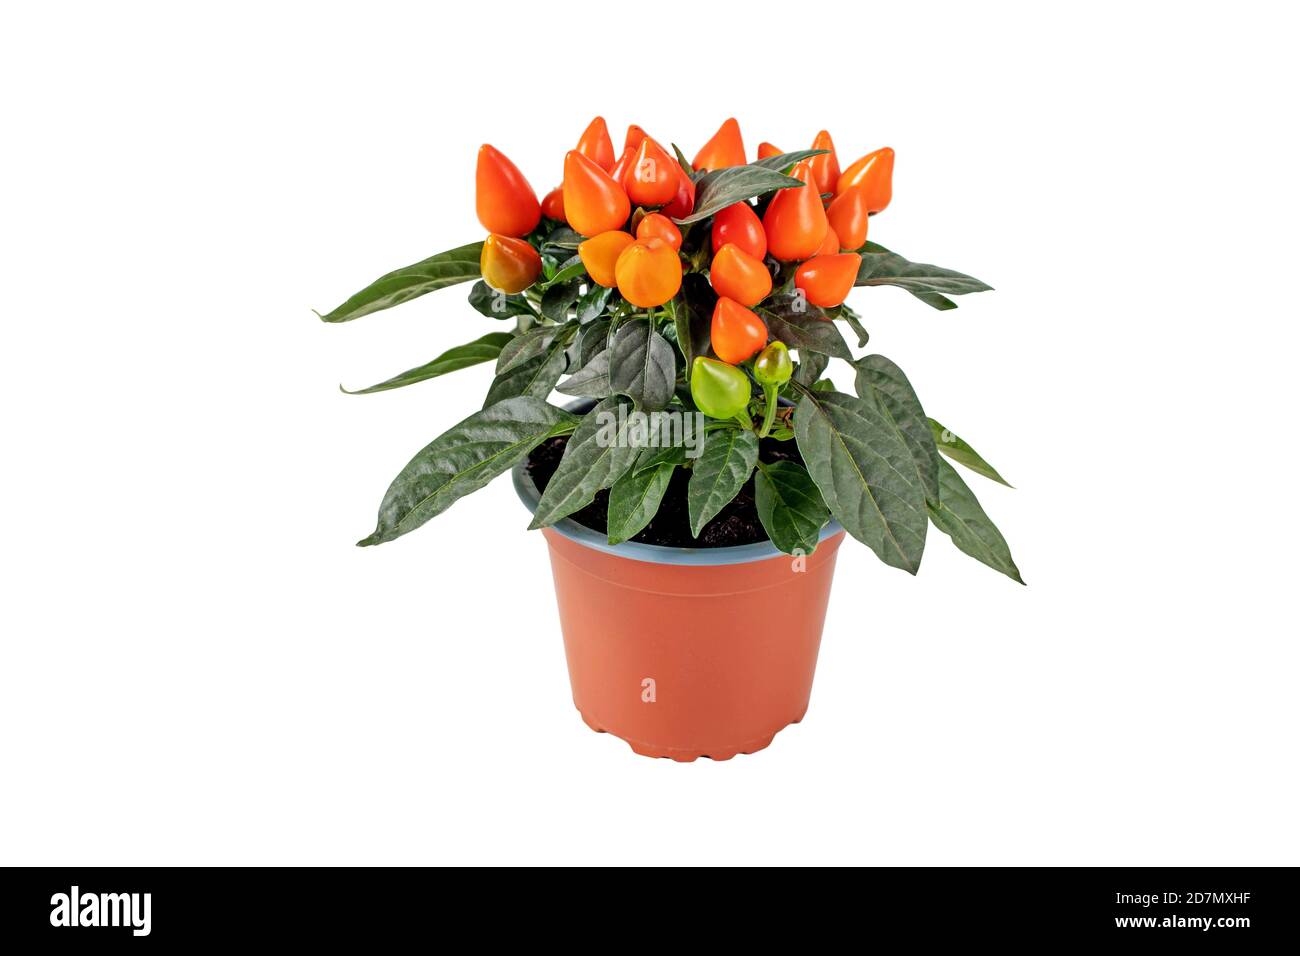 Paprikapflanze im braunen Topf isoliert auf weiß. Oranges, ornamentales Chili mit aufrechten Früchten. Stockfoto